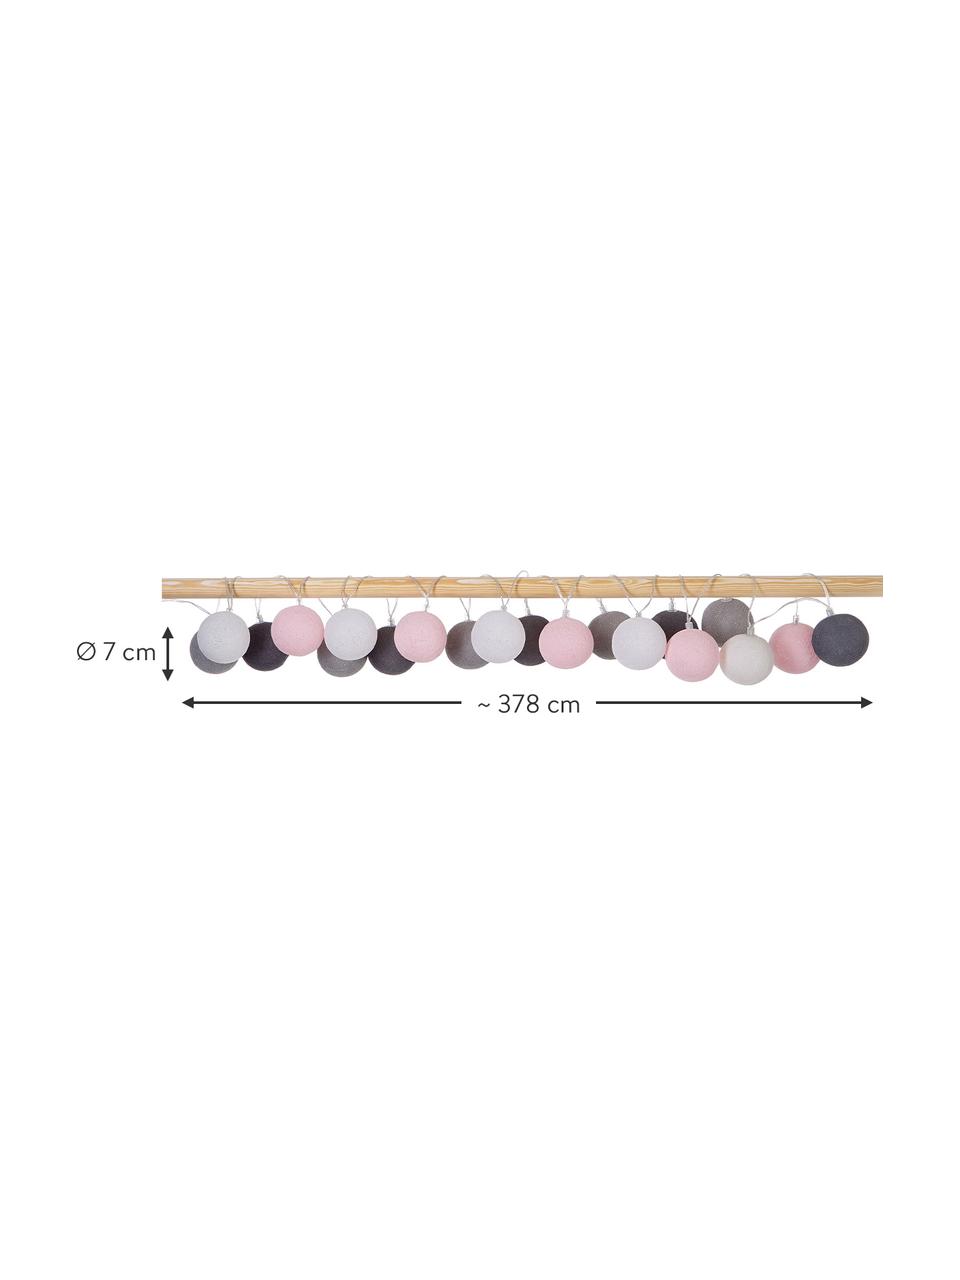 Girlanda świetlna LED Colorain, dł. 378 cm i 20 lampionów, Biały, blady różowy, odcienie szarego, D 378 cm